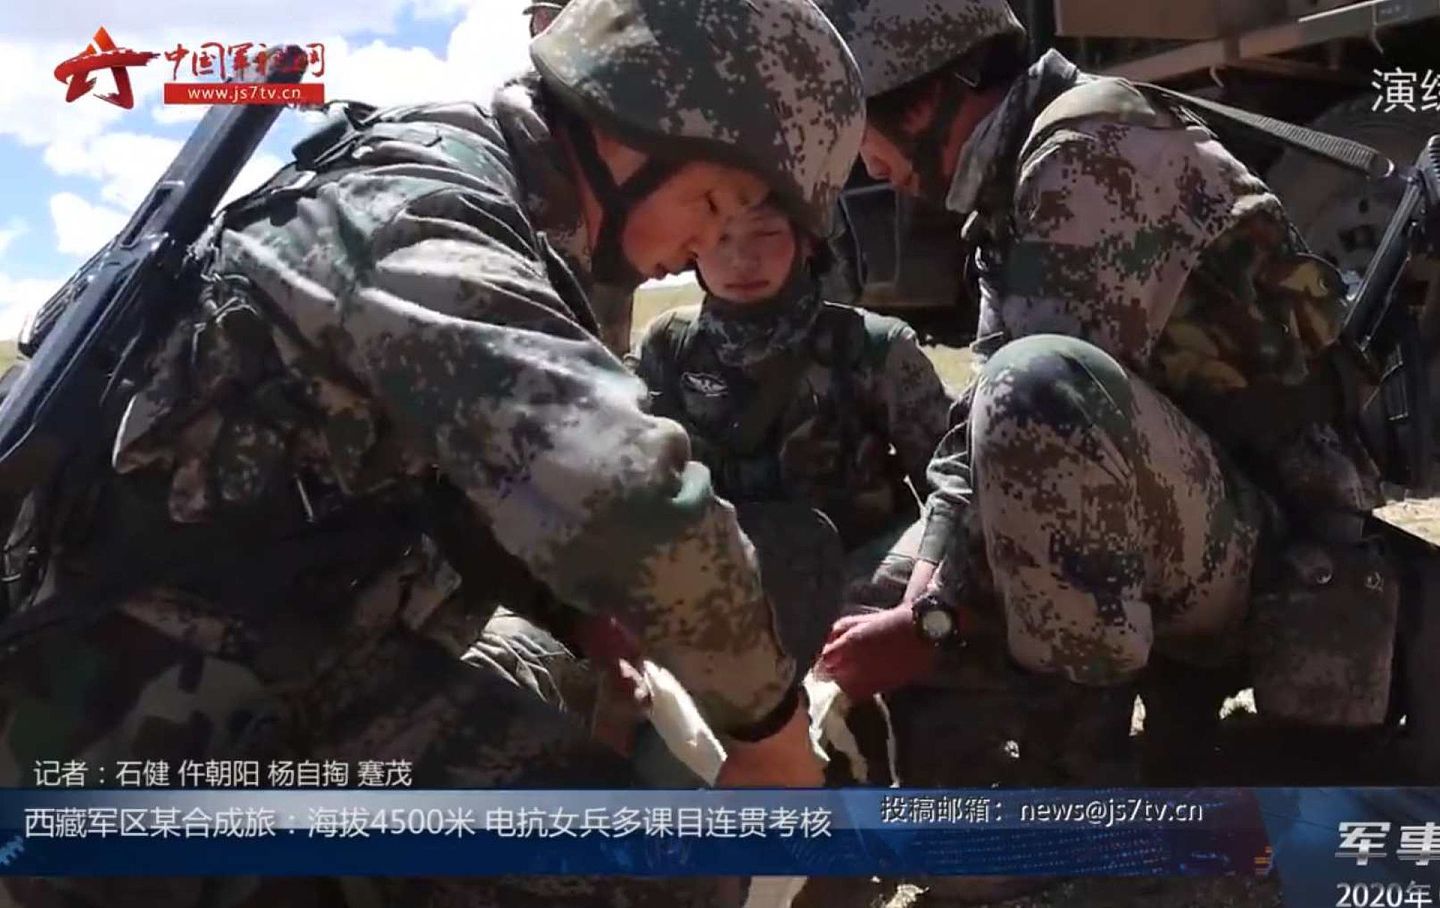 2020年6月13日，西藏军区某合成旅在海拔4500米的陌生地域组织了一场电抗分队女兵强化训练考核，该合成旅短波和超短波测向干扰车亮相。（中国军视网视频截图）